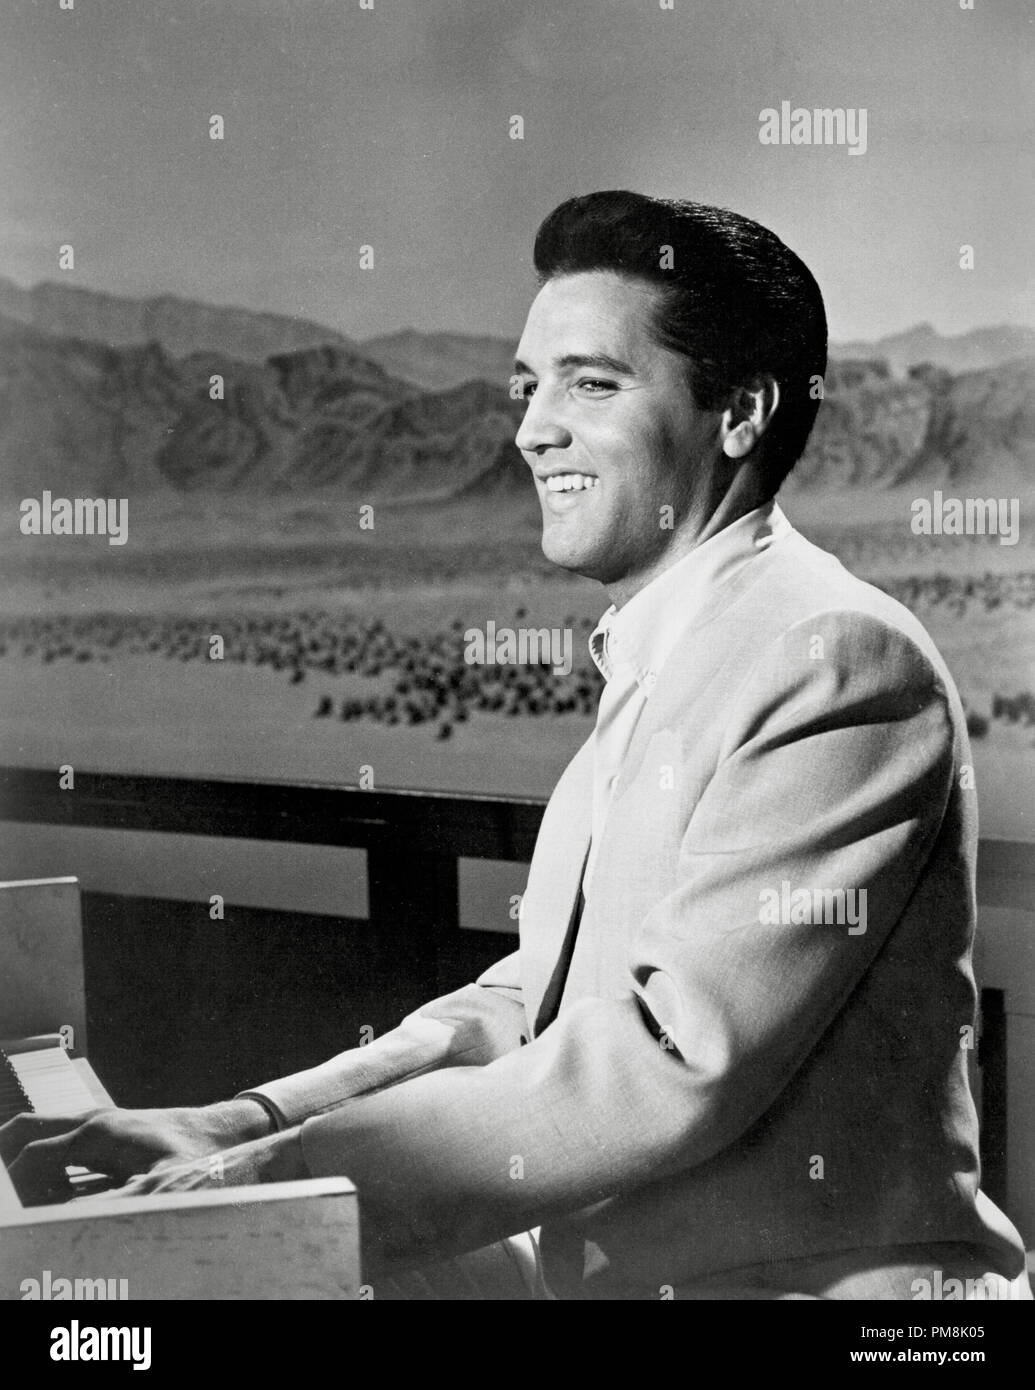 (Archivage classique du cinéma - Rétrospective) Elvis Presley Elvis Presley, vers 1965 référence #  31616 077THA Banque D'Images